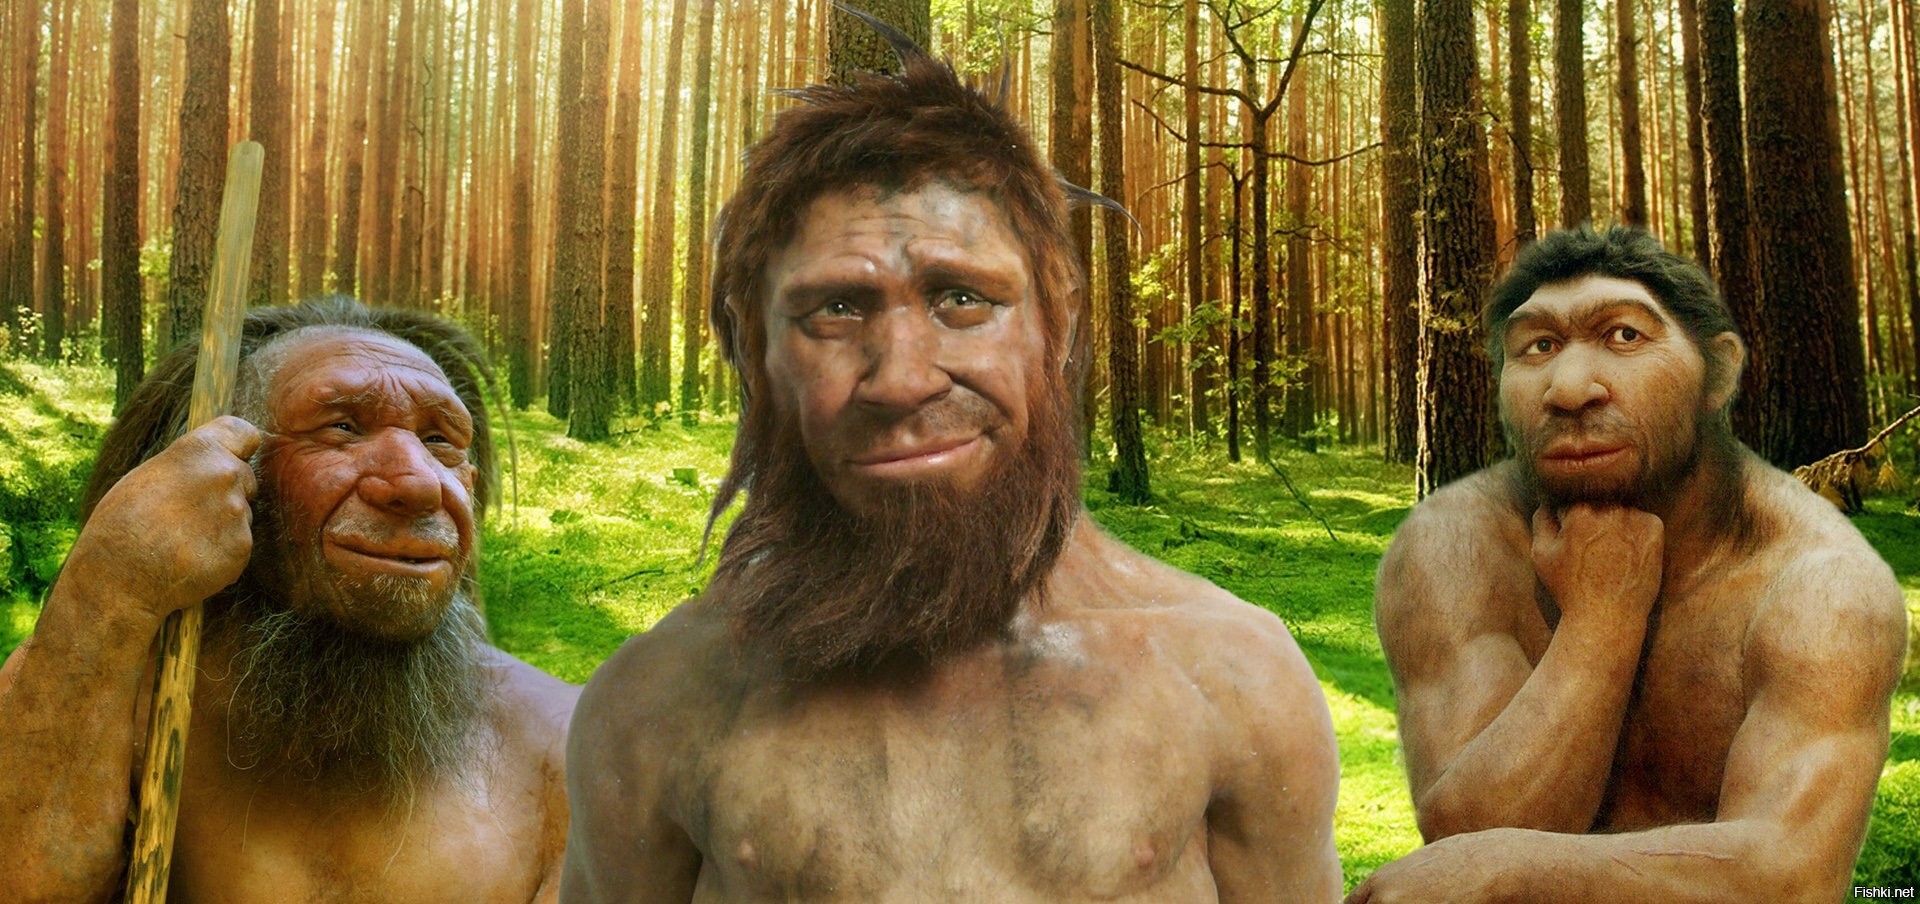 Ген неандертальца у современного человека фото